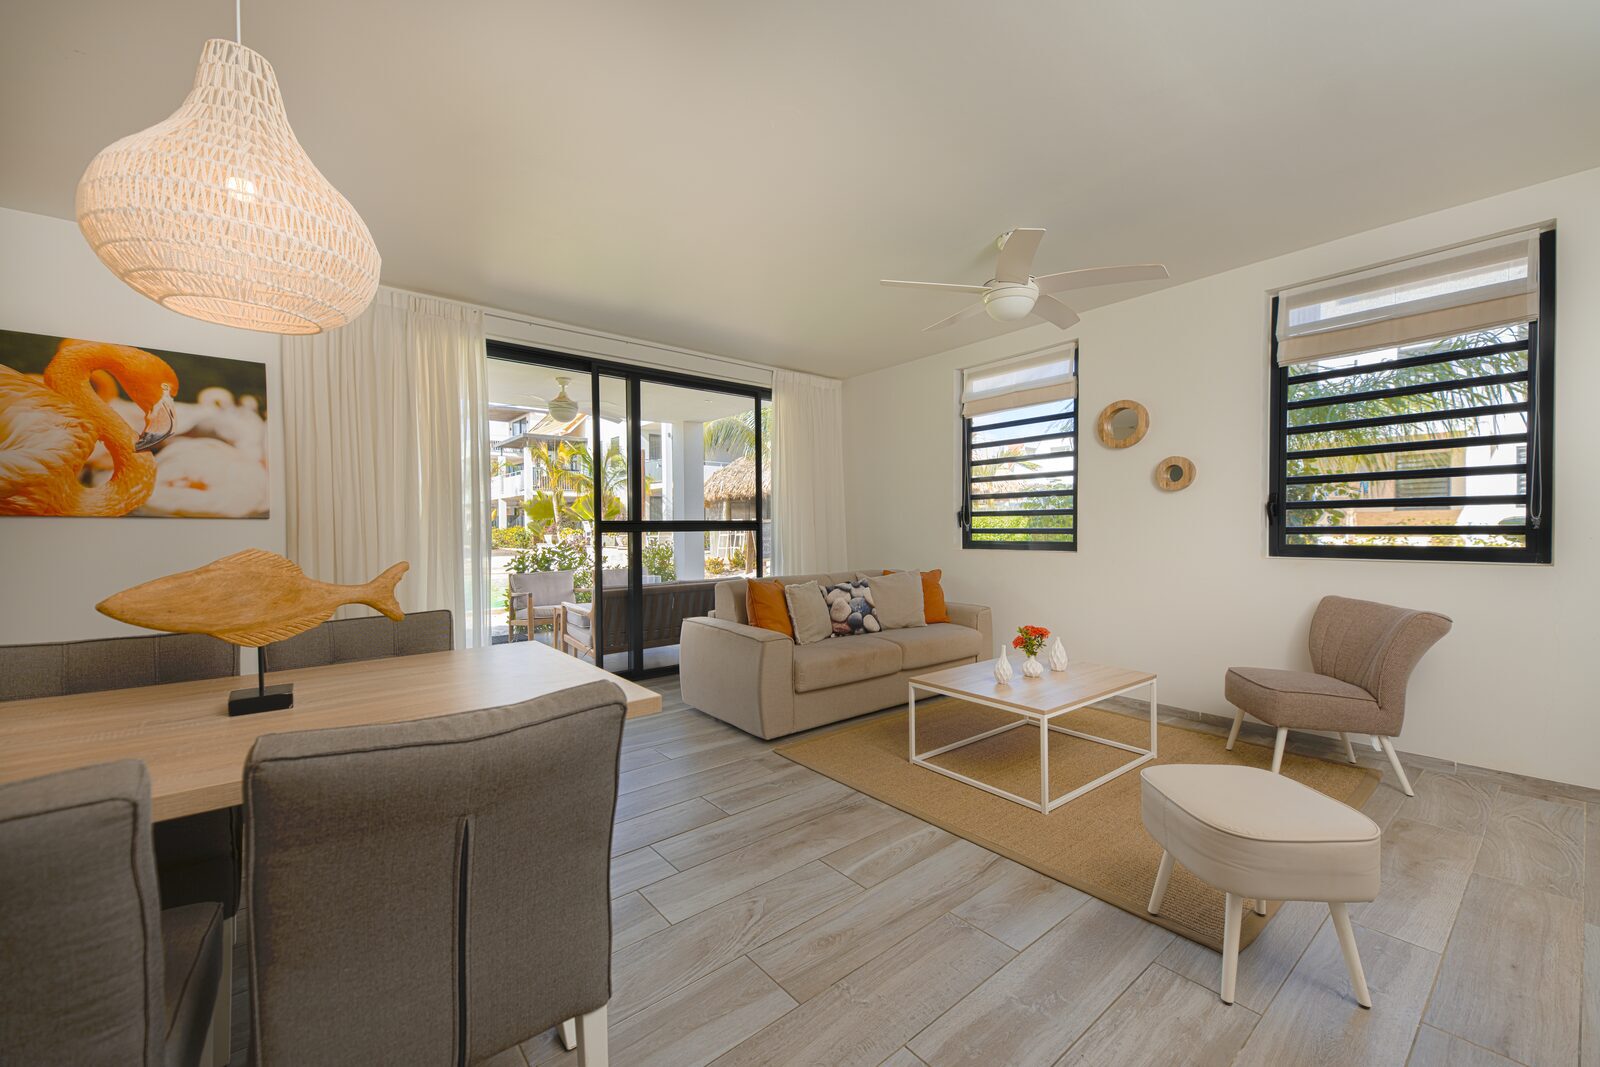 ¿Buscas un apartamento en Bonaire? Mira aquí los alojamientos disponibles en nuestro complejo.